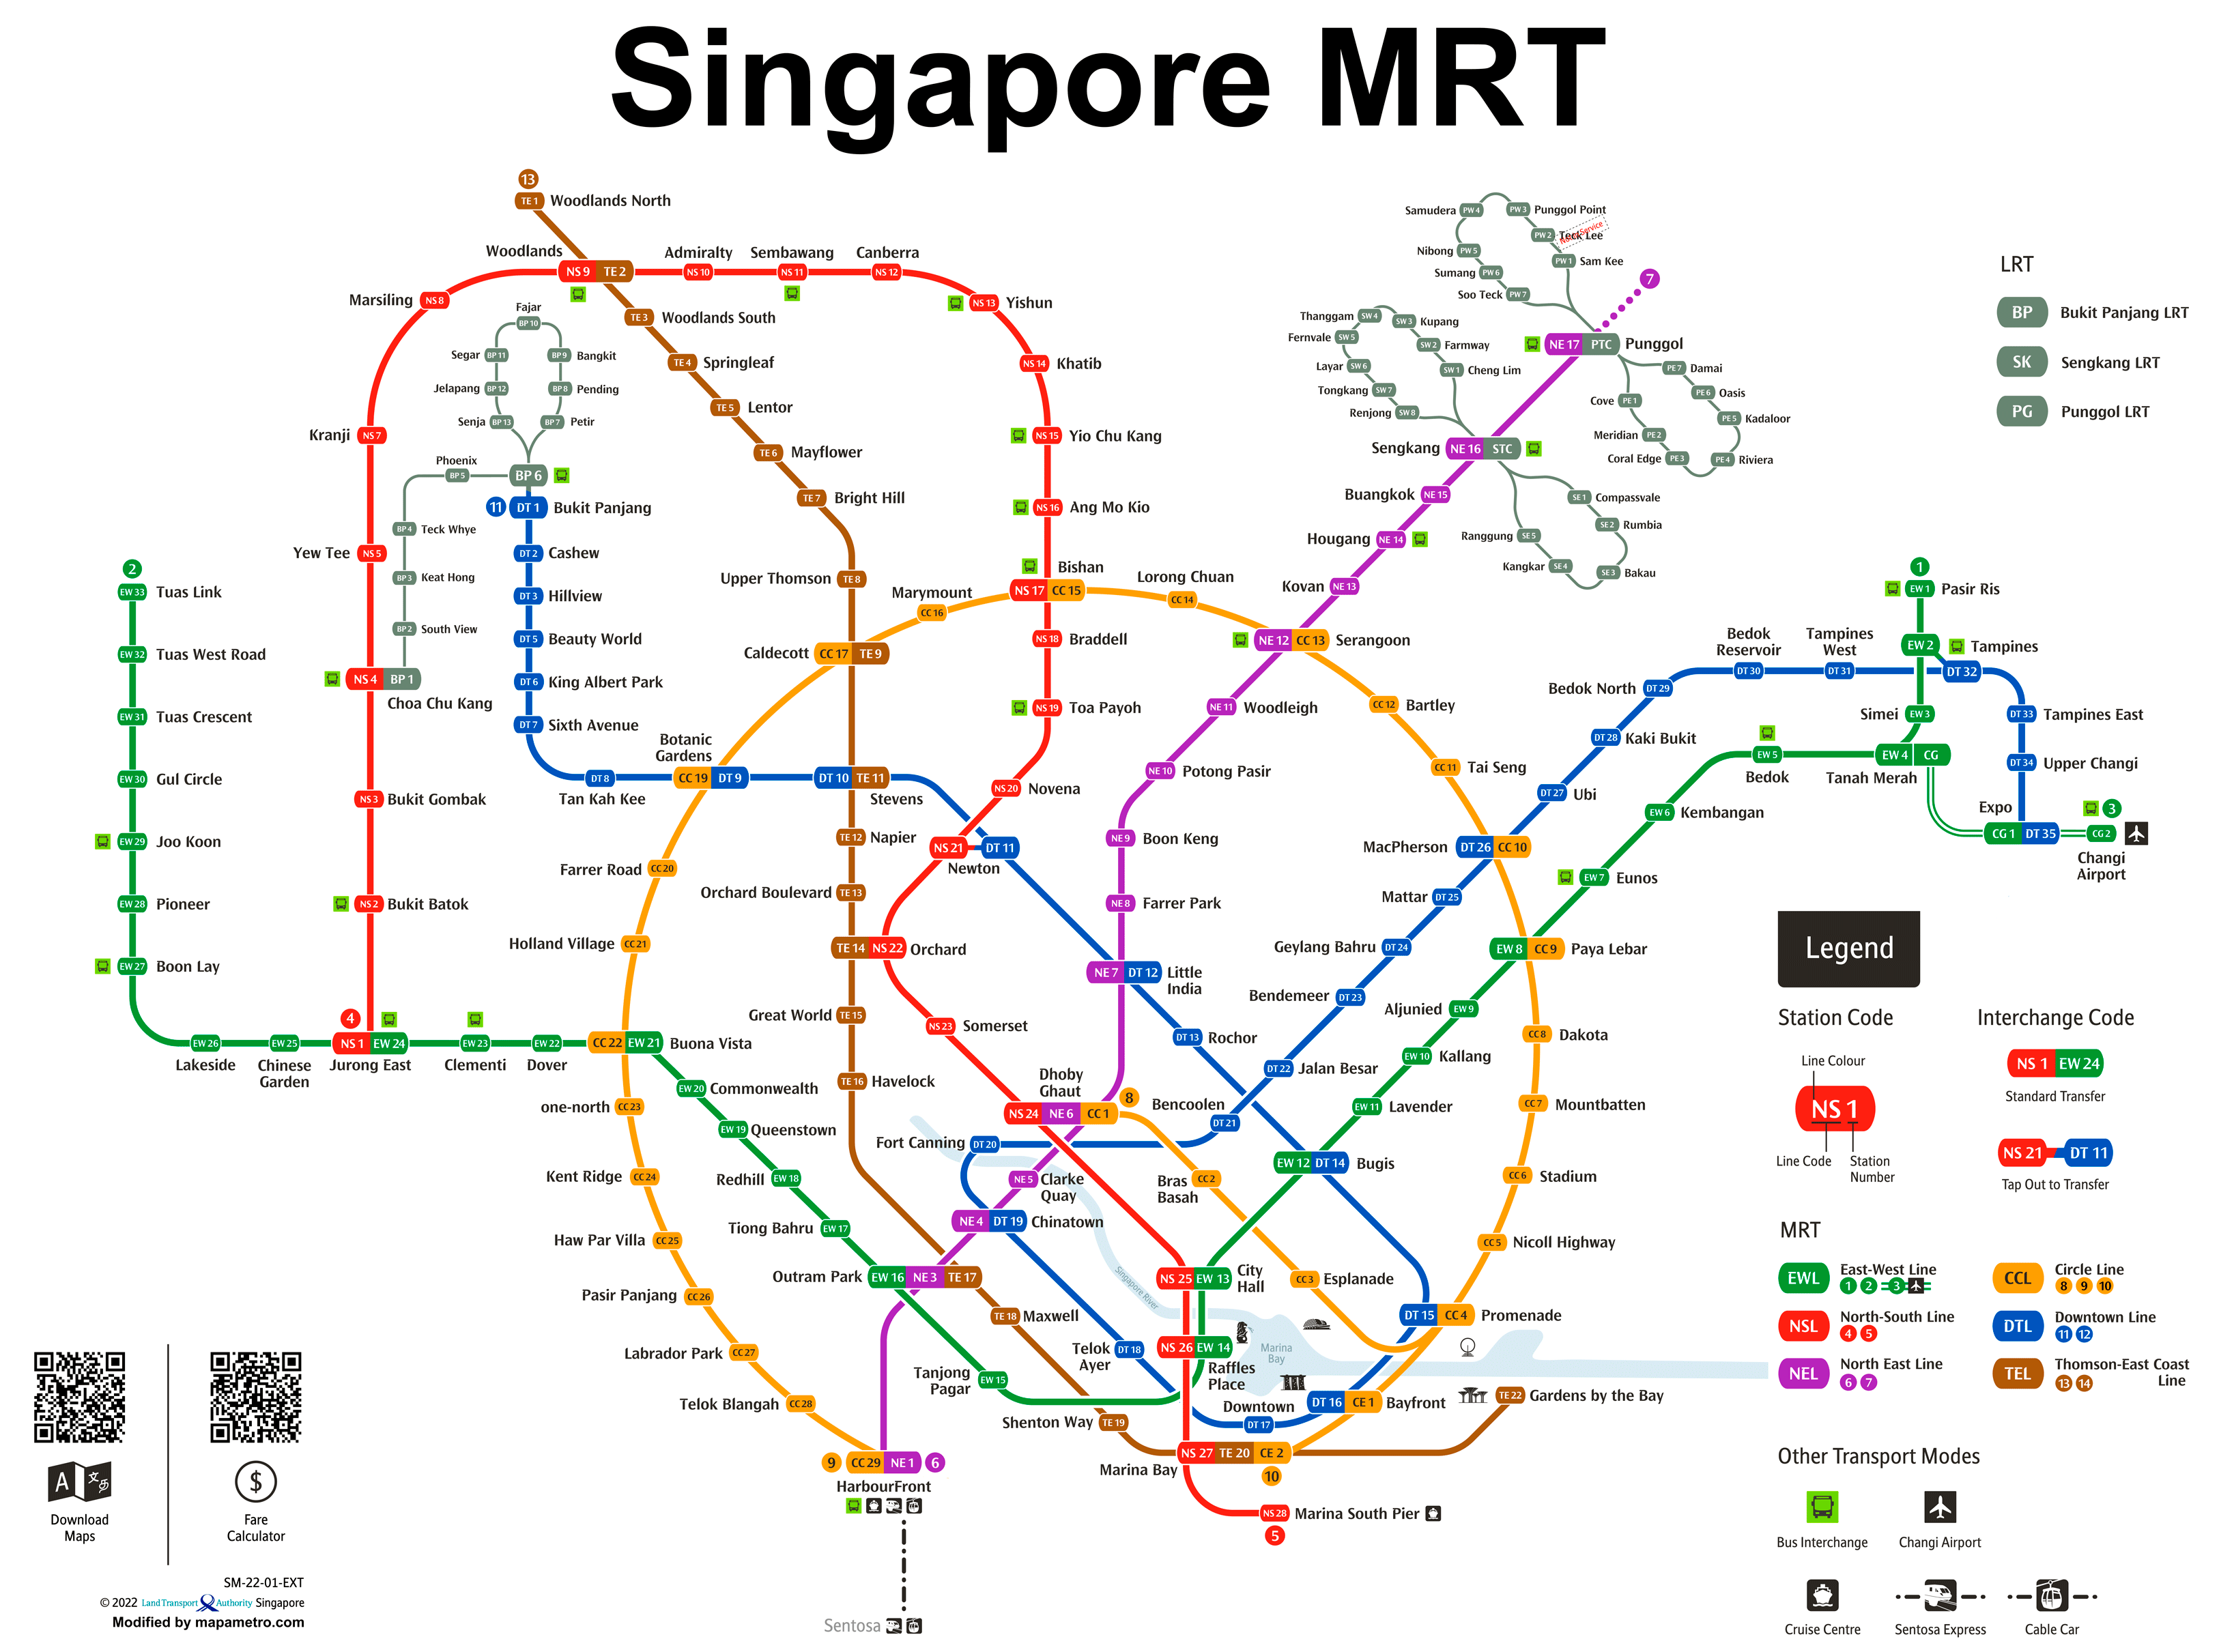 מפת הרכבת התחתית של סינגפור MRT